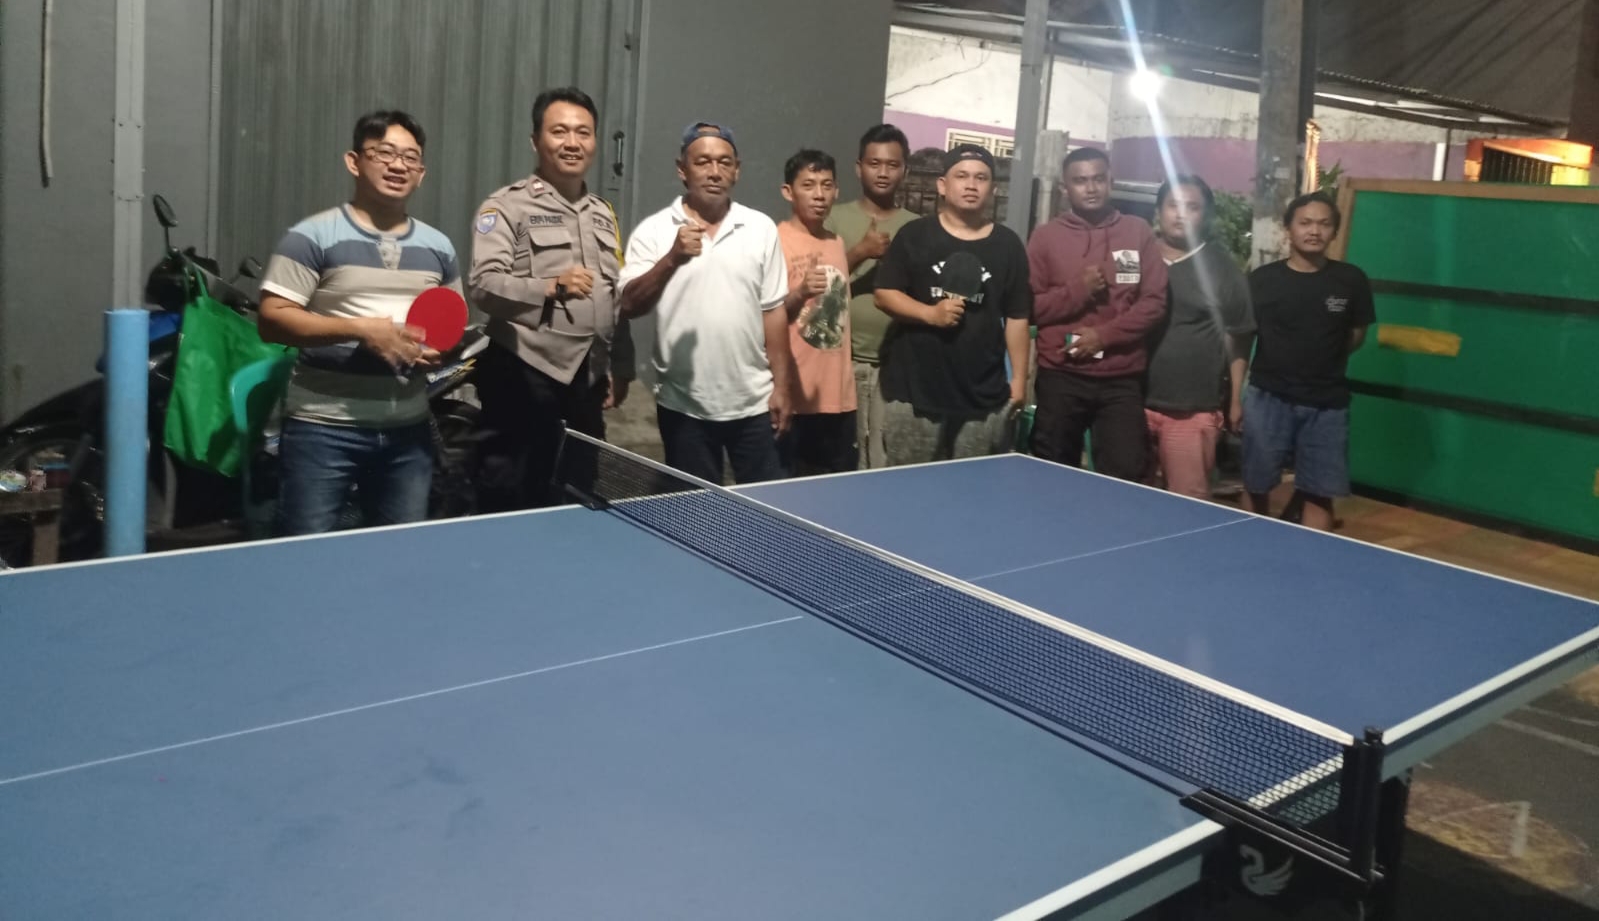 Polisi RW Kunjungi Warga dan Olahraga Bersama Warga Tanjung Priok